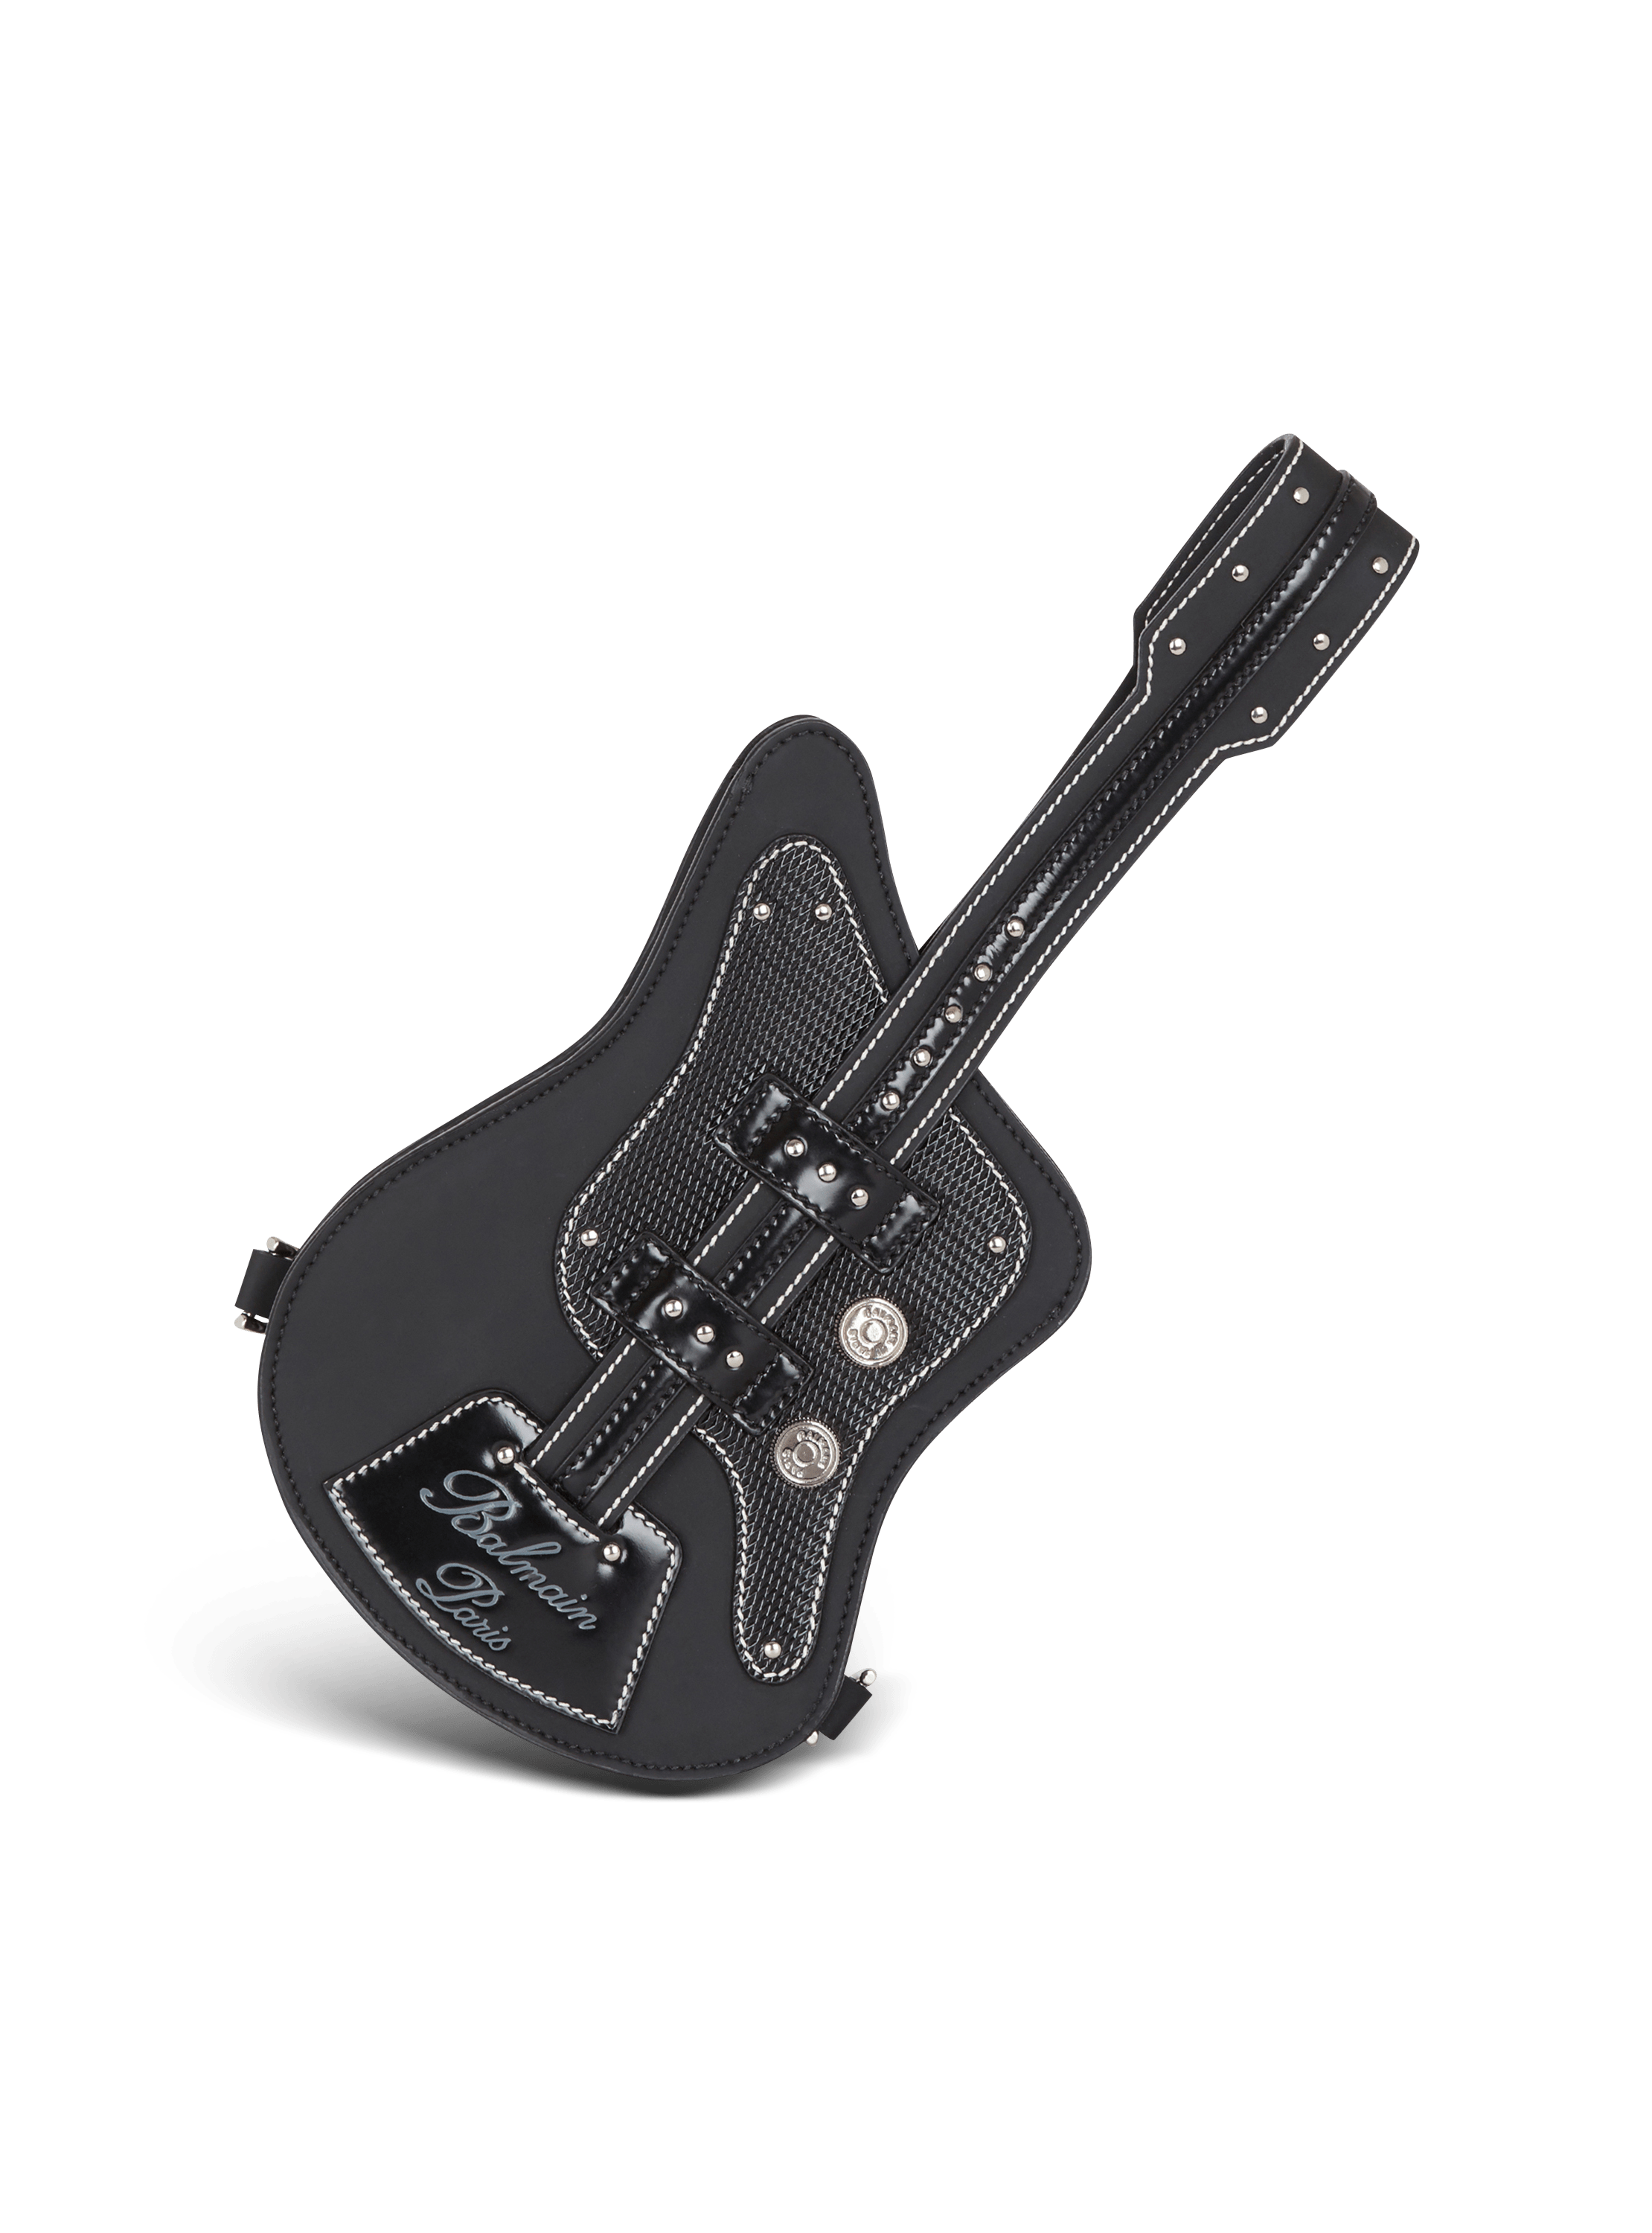 Pochette Guitare aus Leder mit Gummi-Effekt 